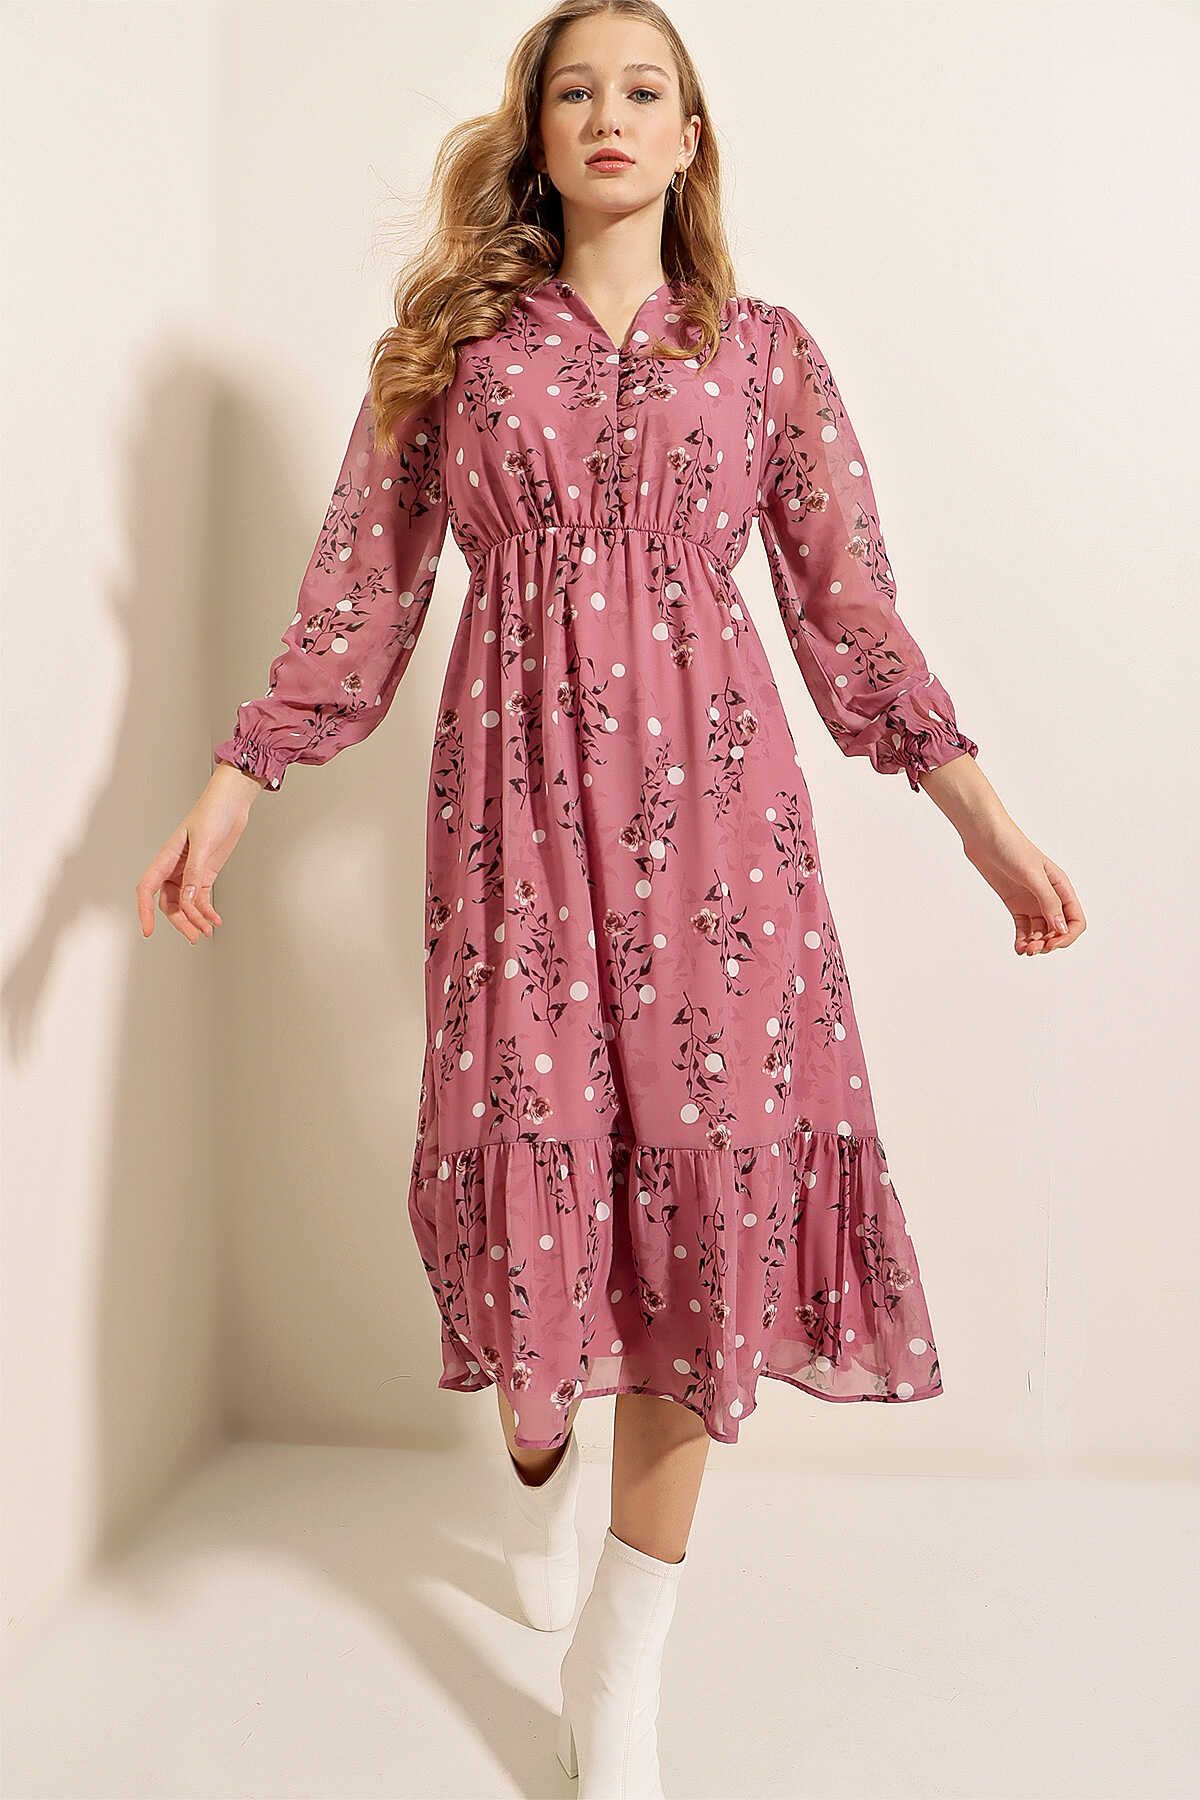 Z GİYİM Kadın Gül Kurusu Desenli Parçalı Şifon Elbise